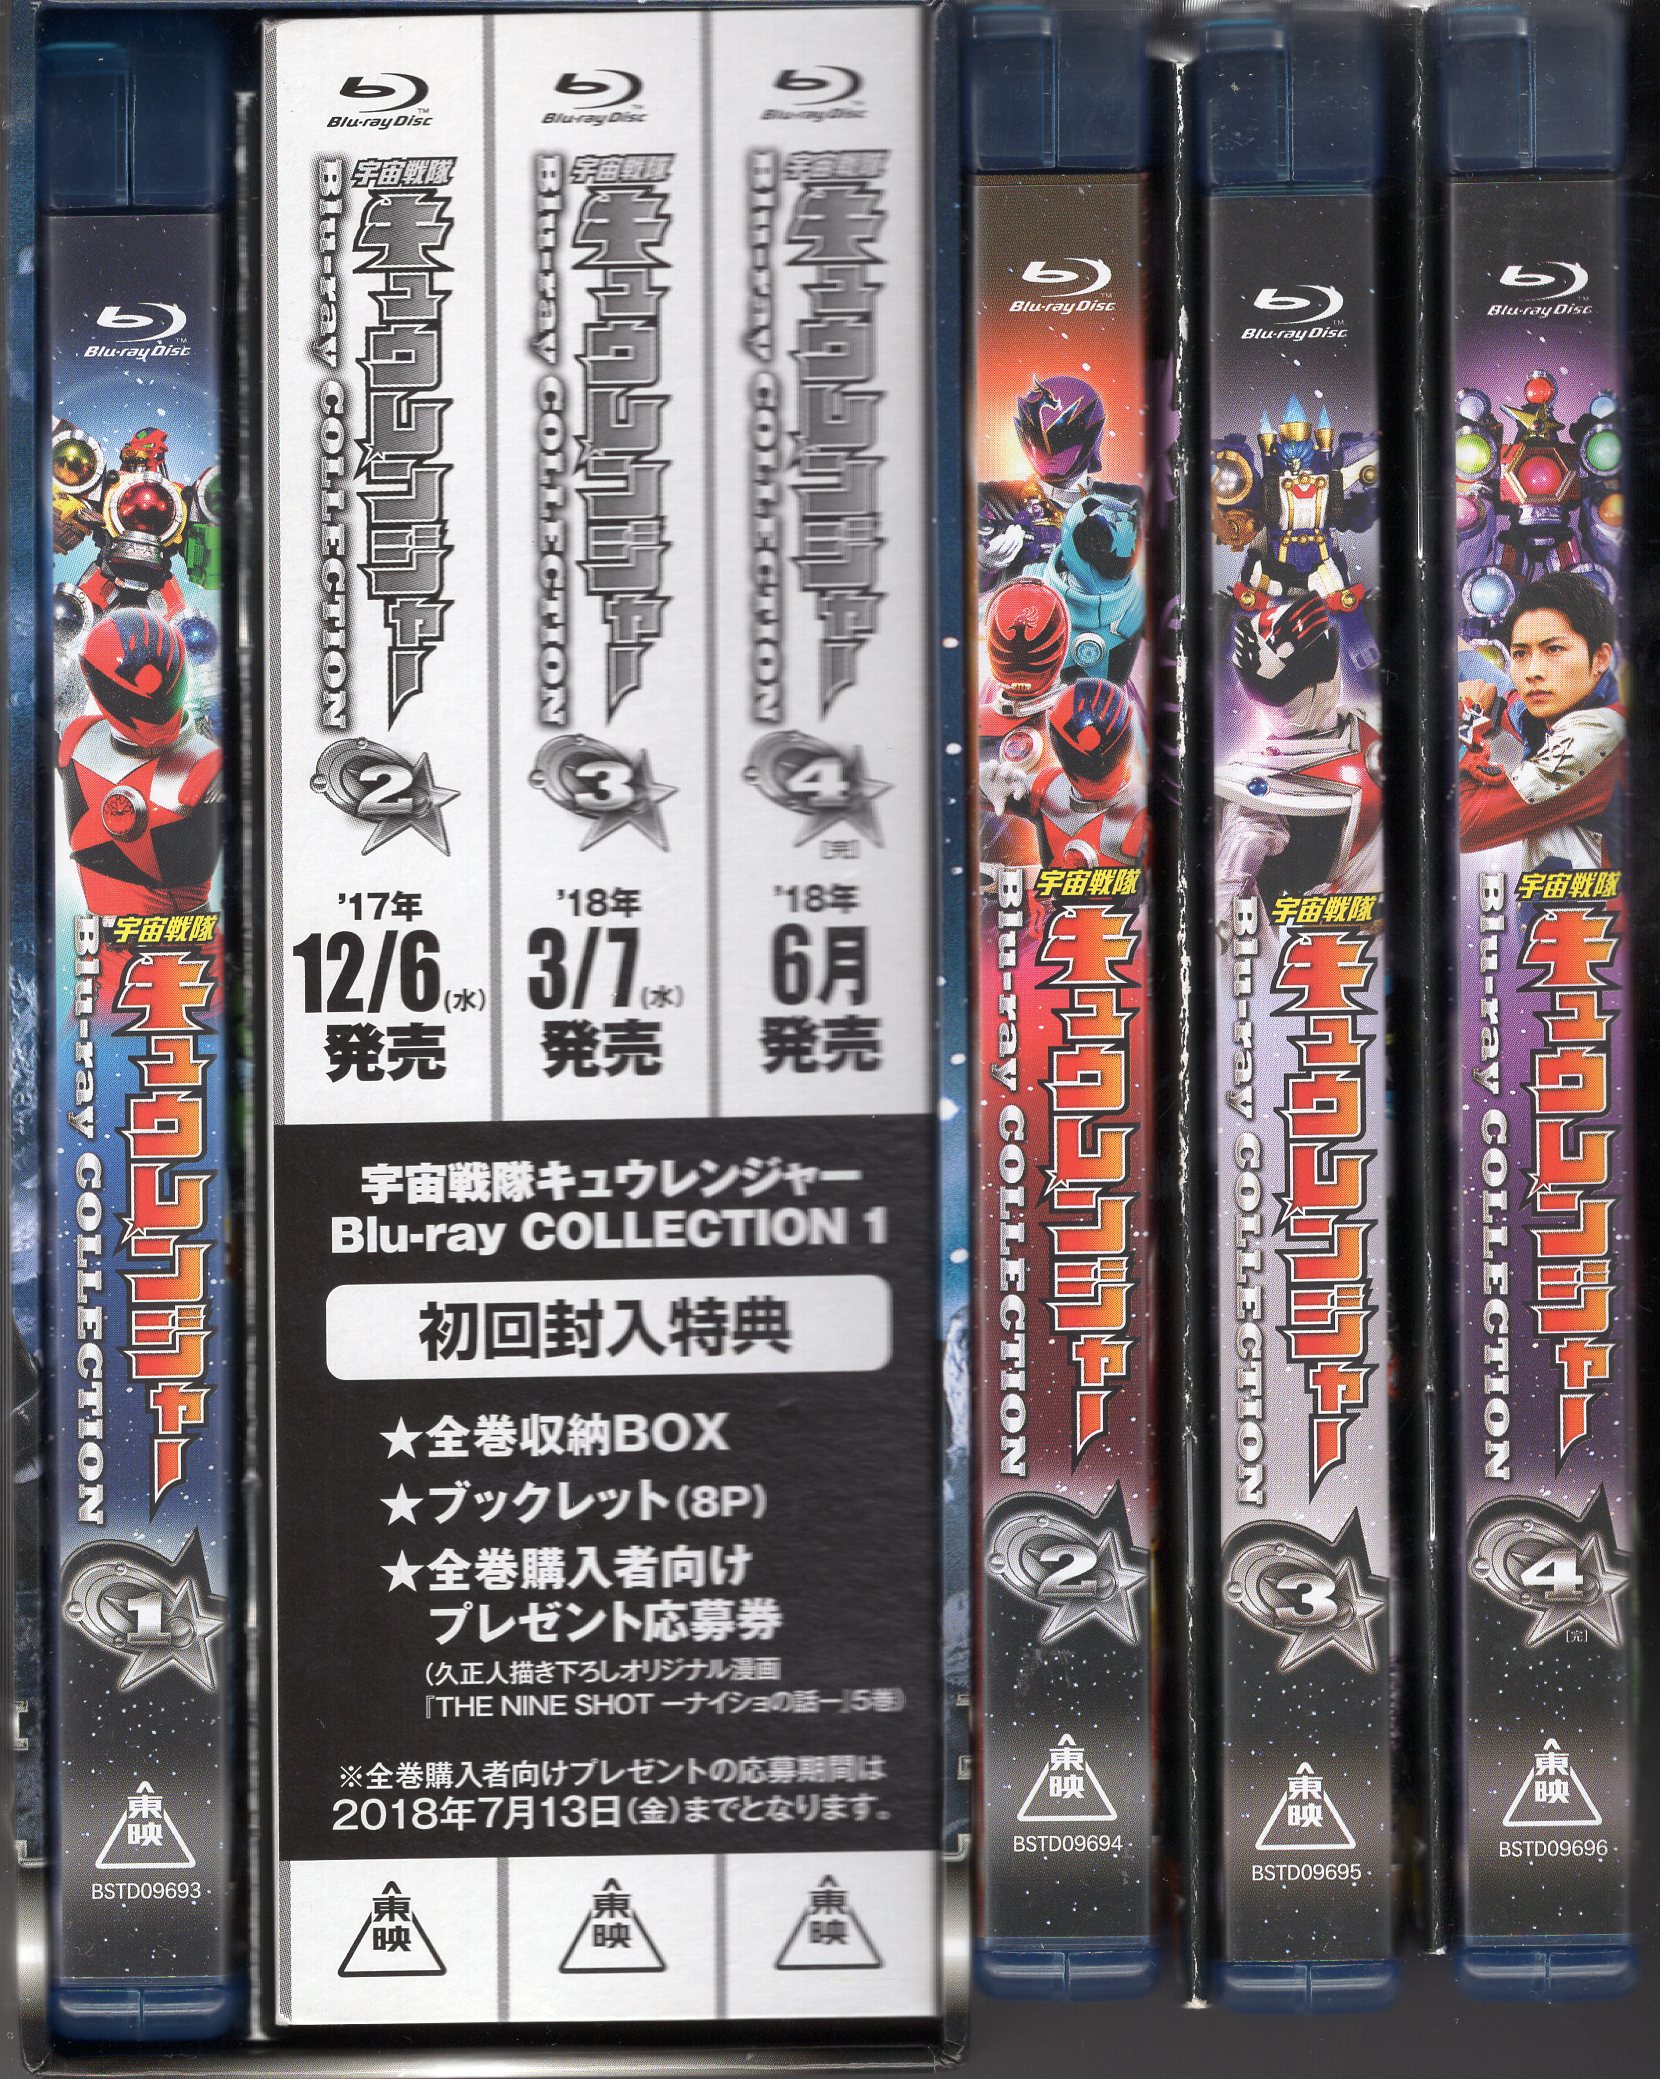 宇宙戦隊キュウレンジャー Blu-ray BOX COLLECTION 全巻 - DVD/ブルーレイ